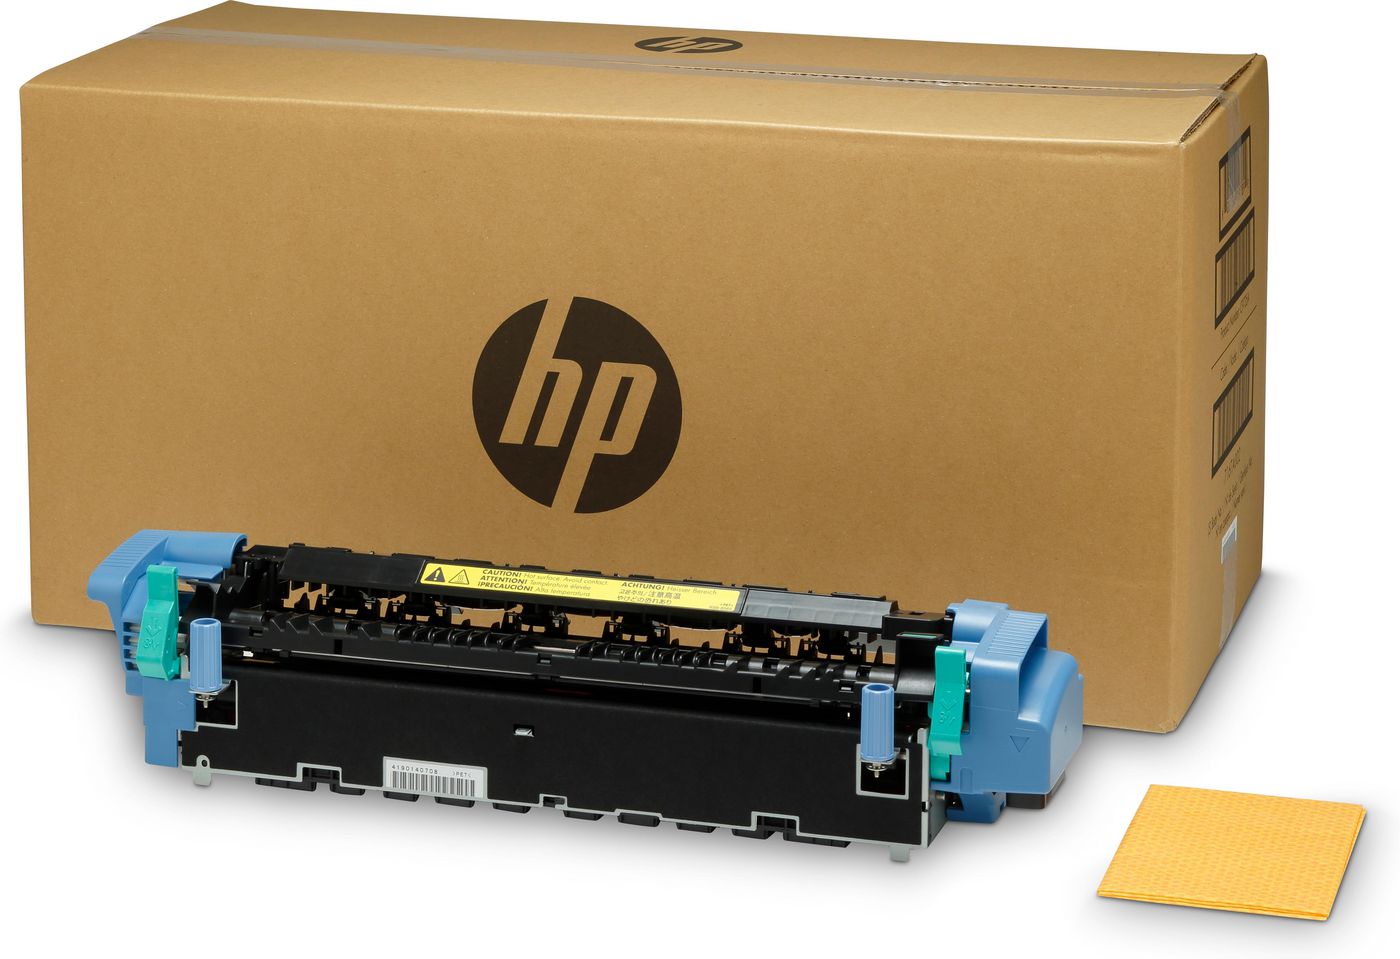 HP C9735A Image Fuser Kit 110V 